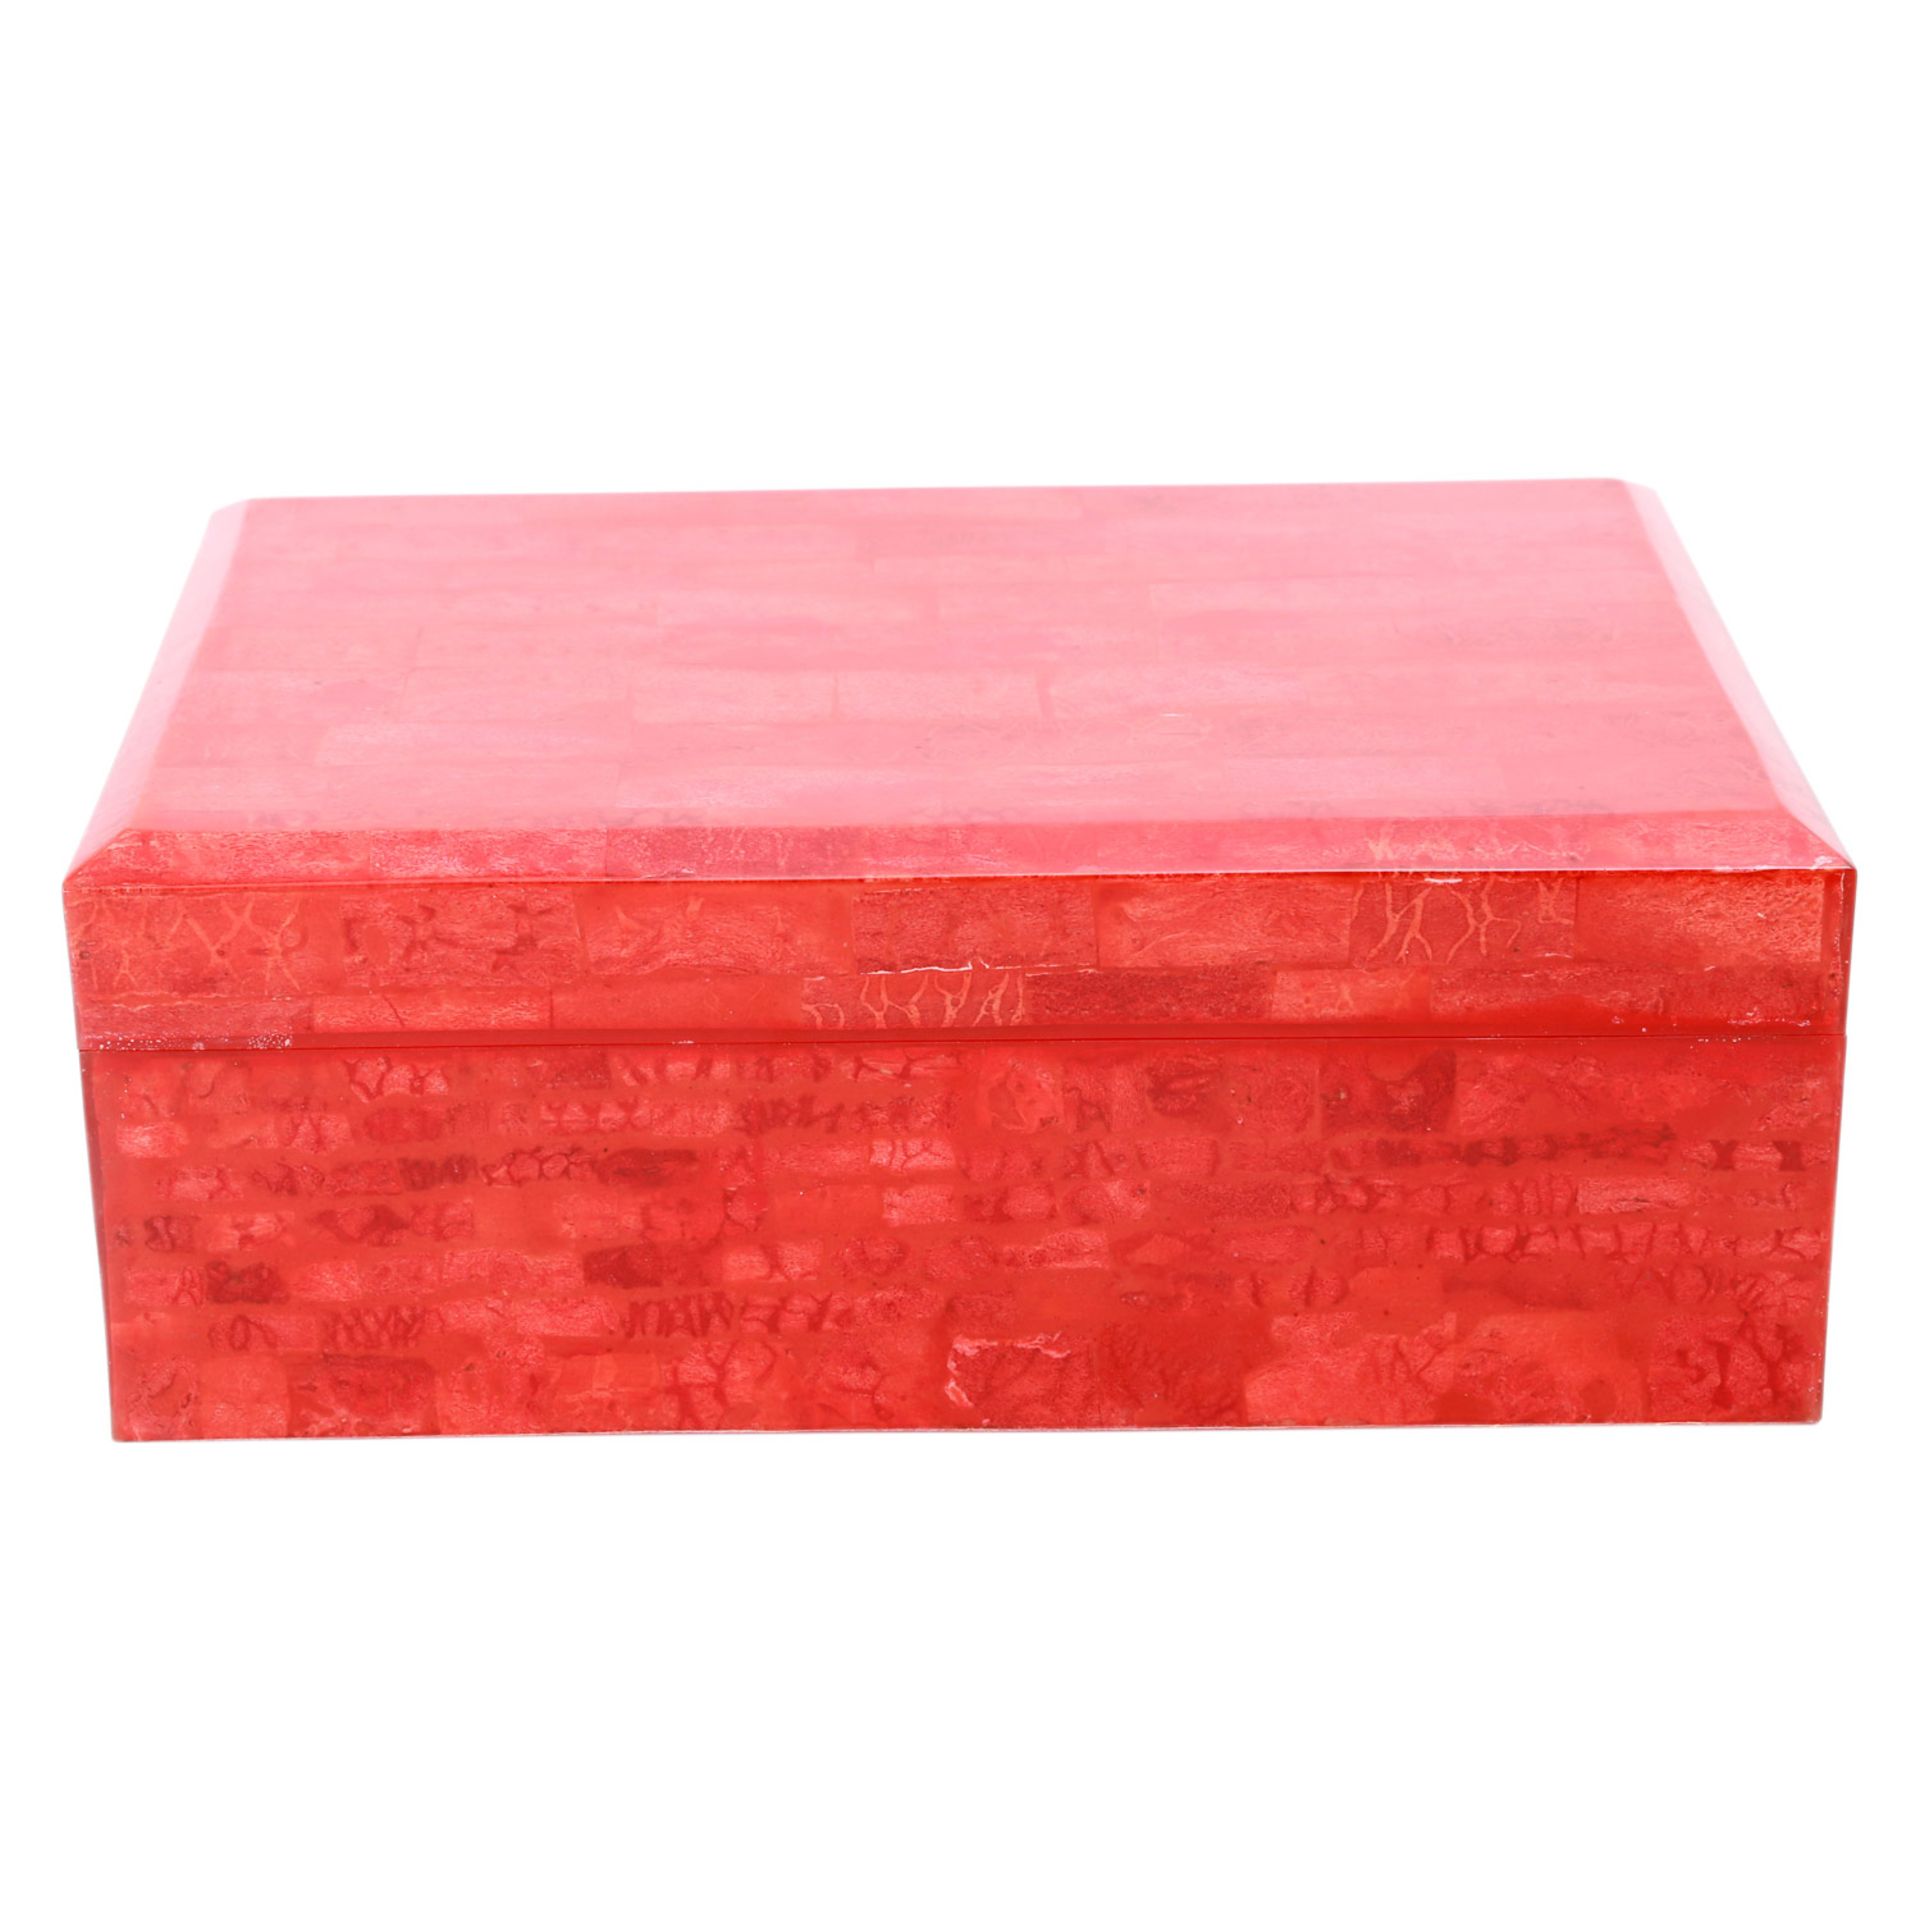 Schmuckkassette. Große Box in Hochglanzlack Rot, marmoriertes Design, rotes Innenfutter,